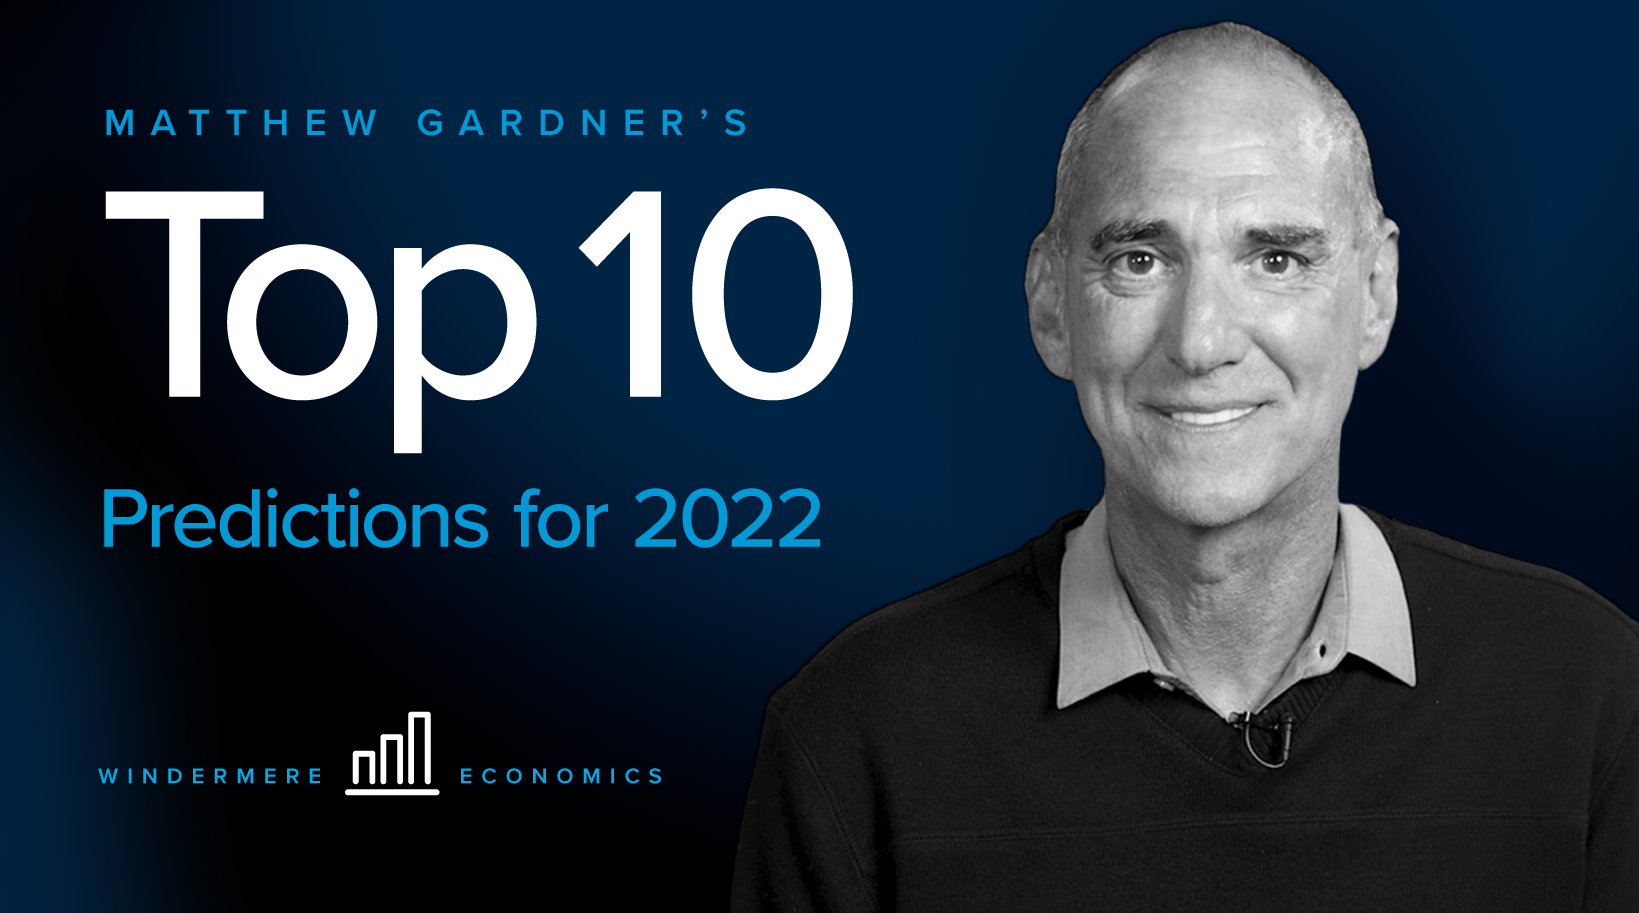 Matthew Gardner’s Top 10 Predictions for 2022